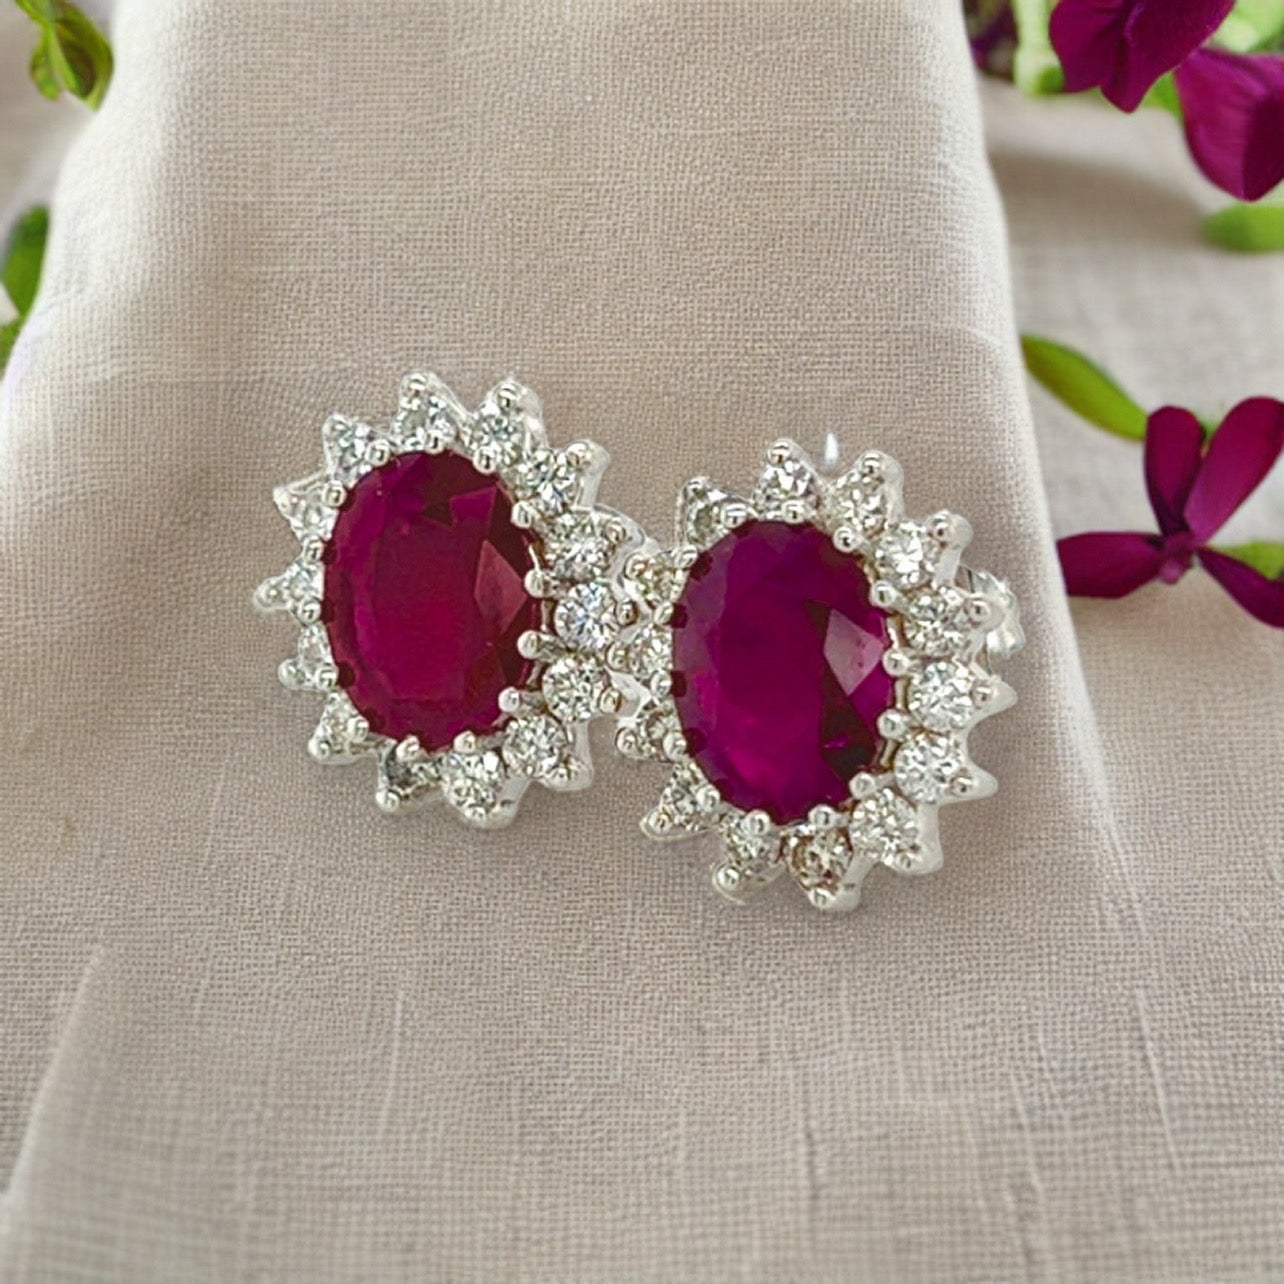 Natural Ruby Diamond Earrings 14k Gold 4.04 TCW Certified $5,250 215094 - Certified Fine Jewelry